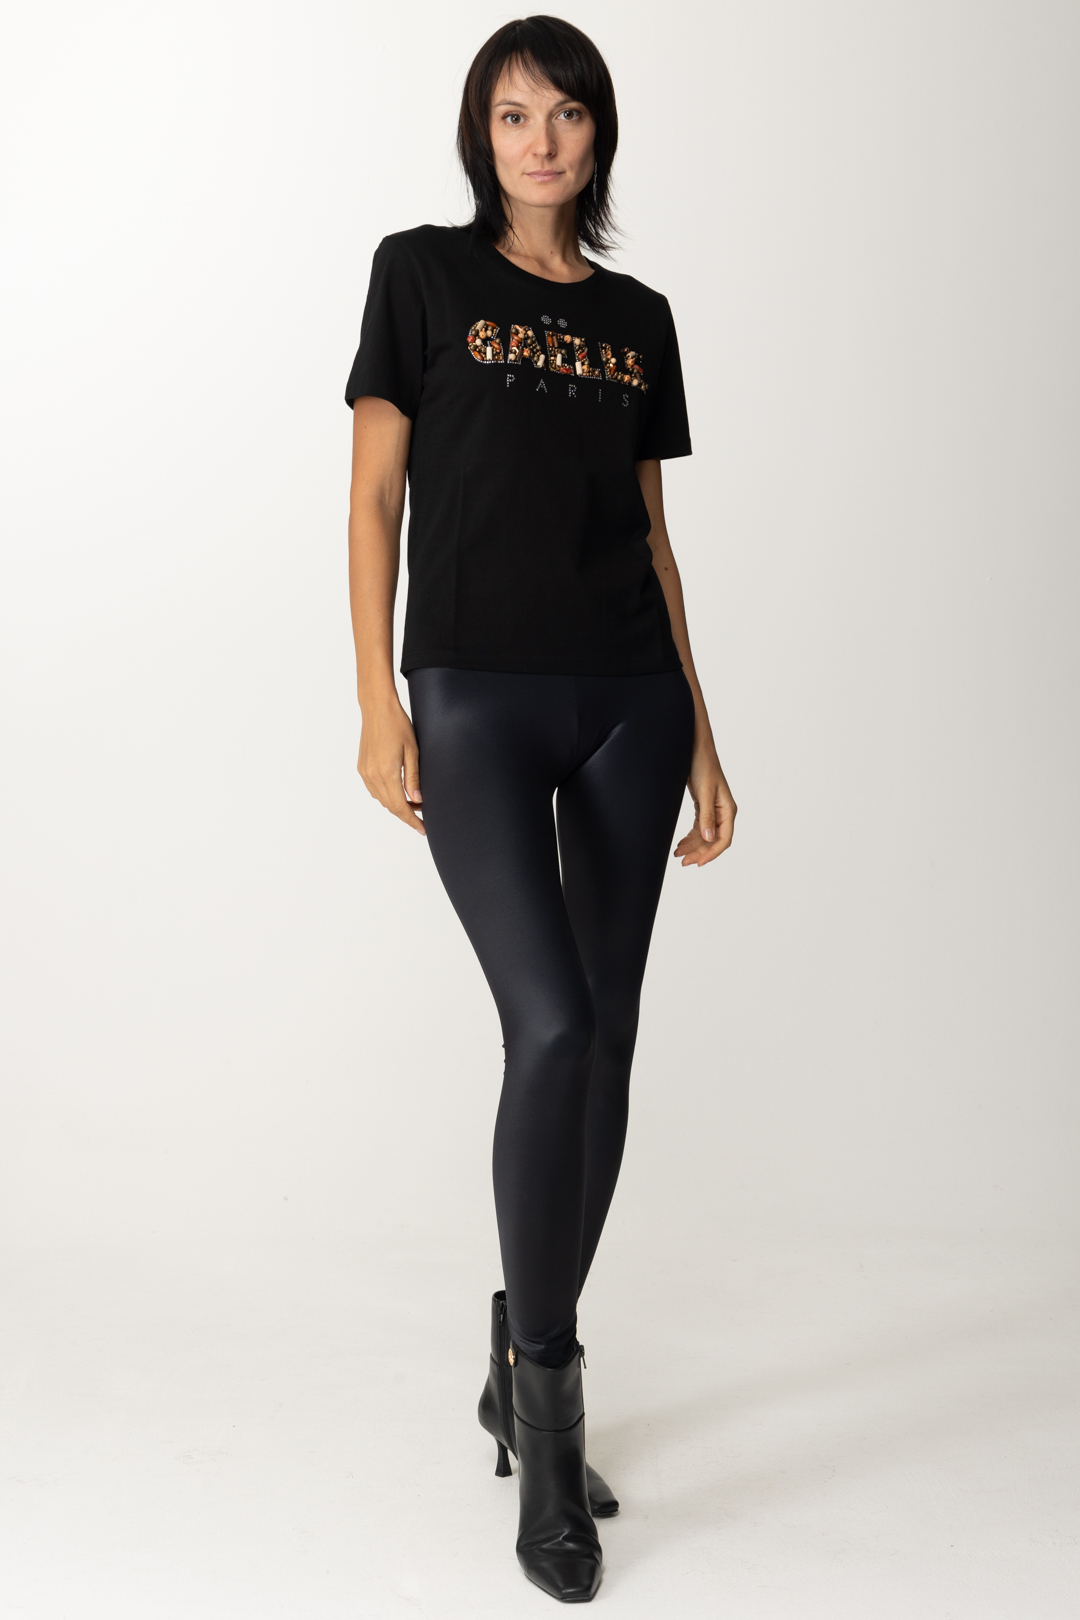 Anteprima: Gaelle Paris T-shirt con logo ricamato Nero